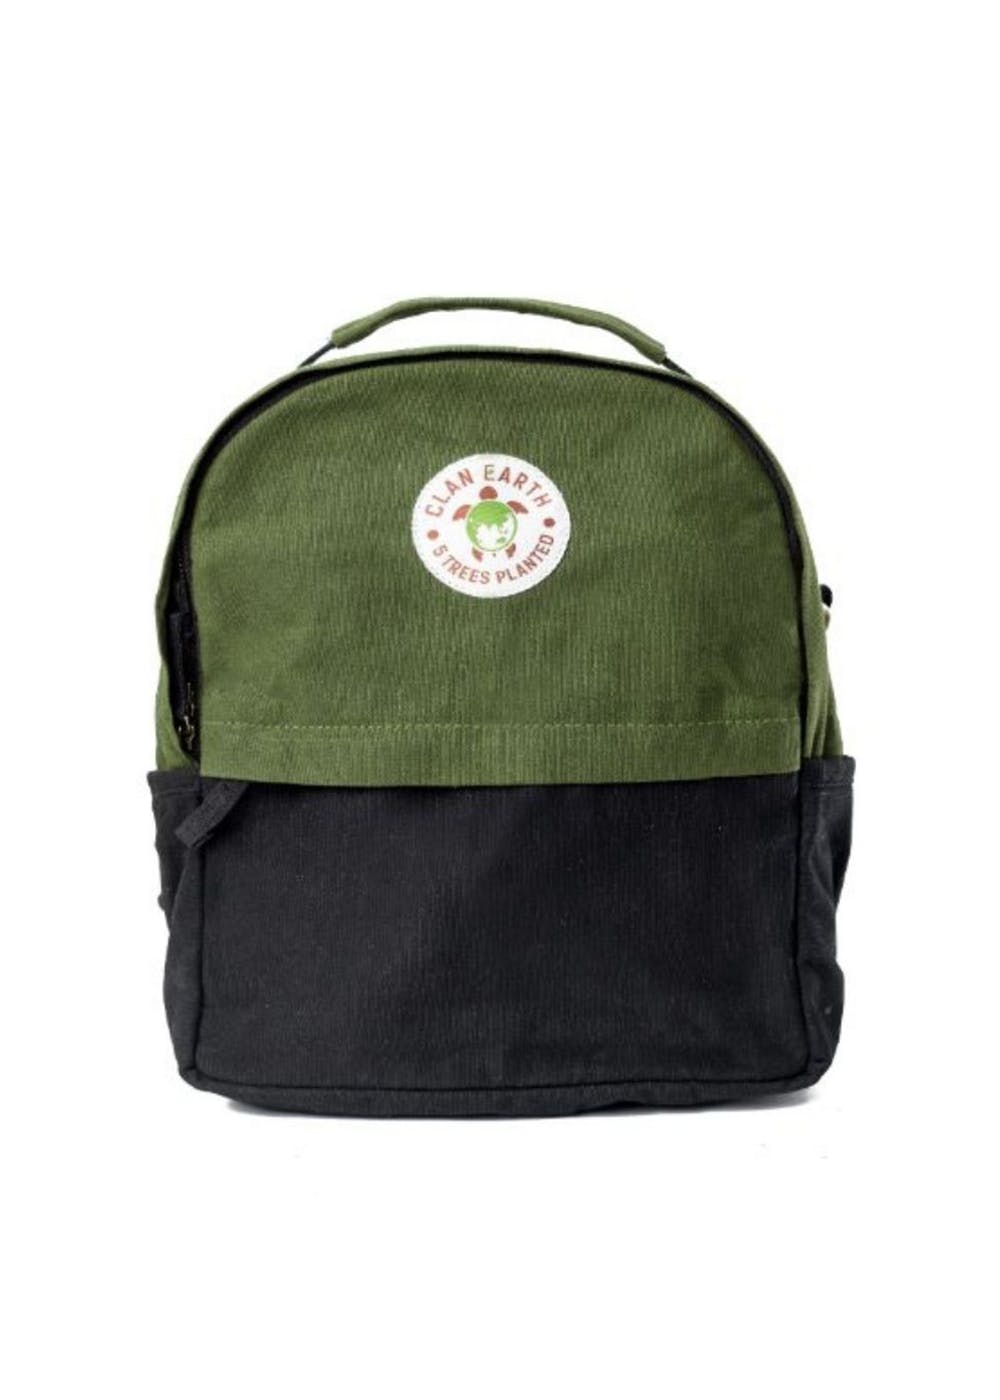 Black Front Pocket Detail Contrast Backpack - Olive Green